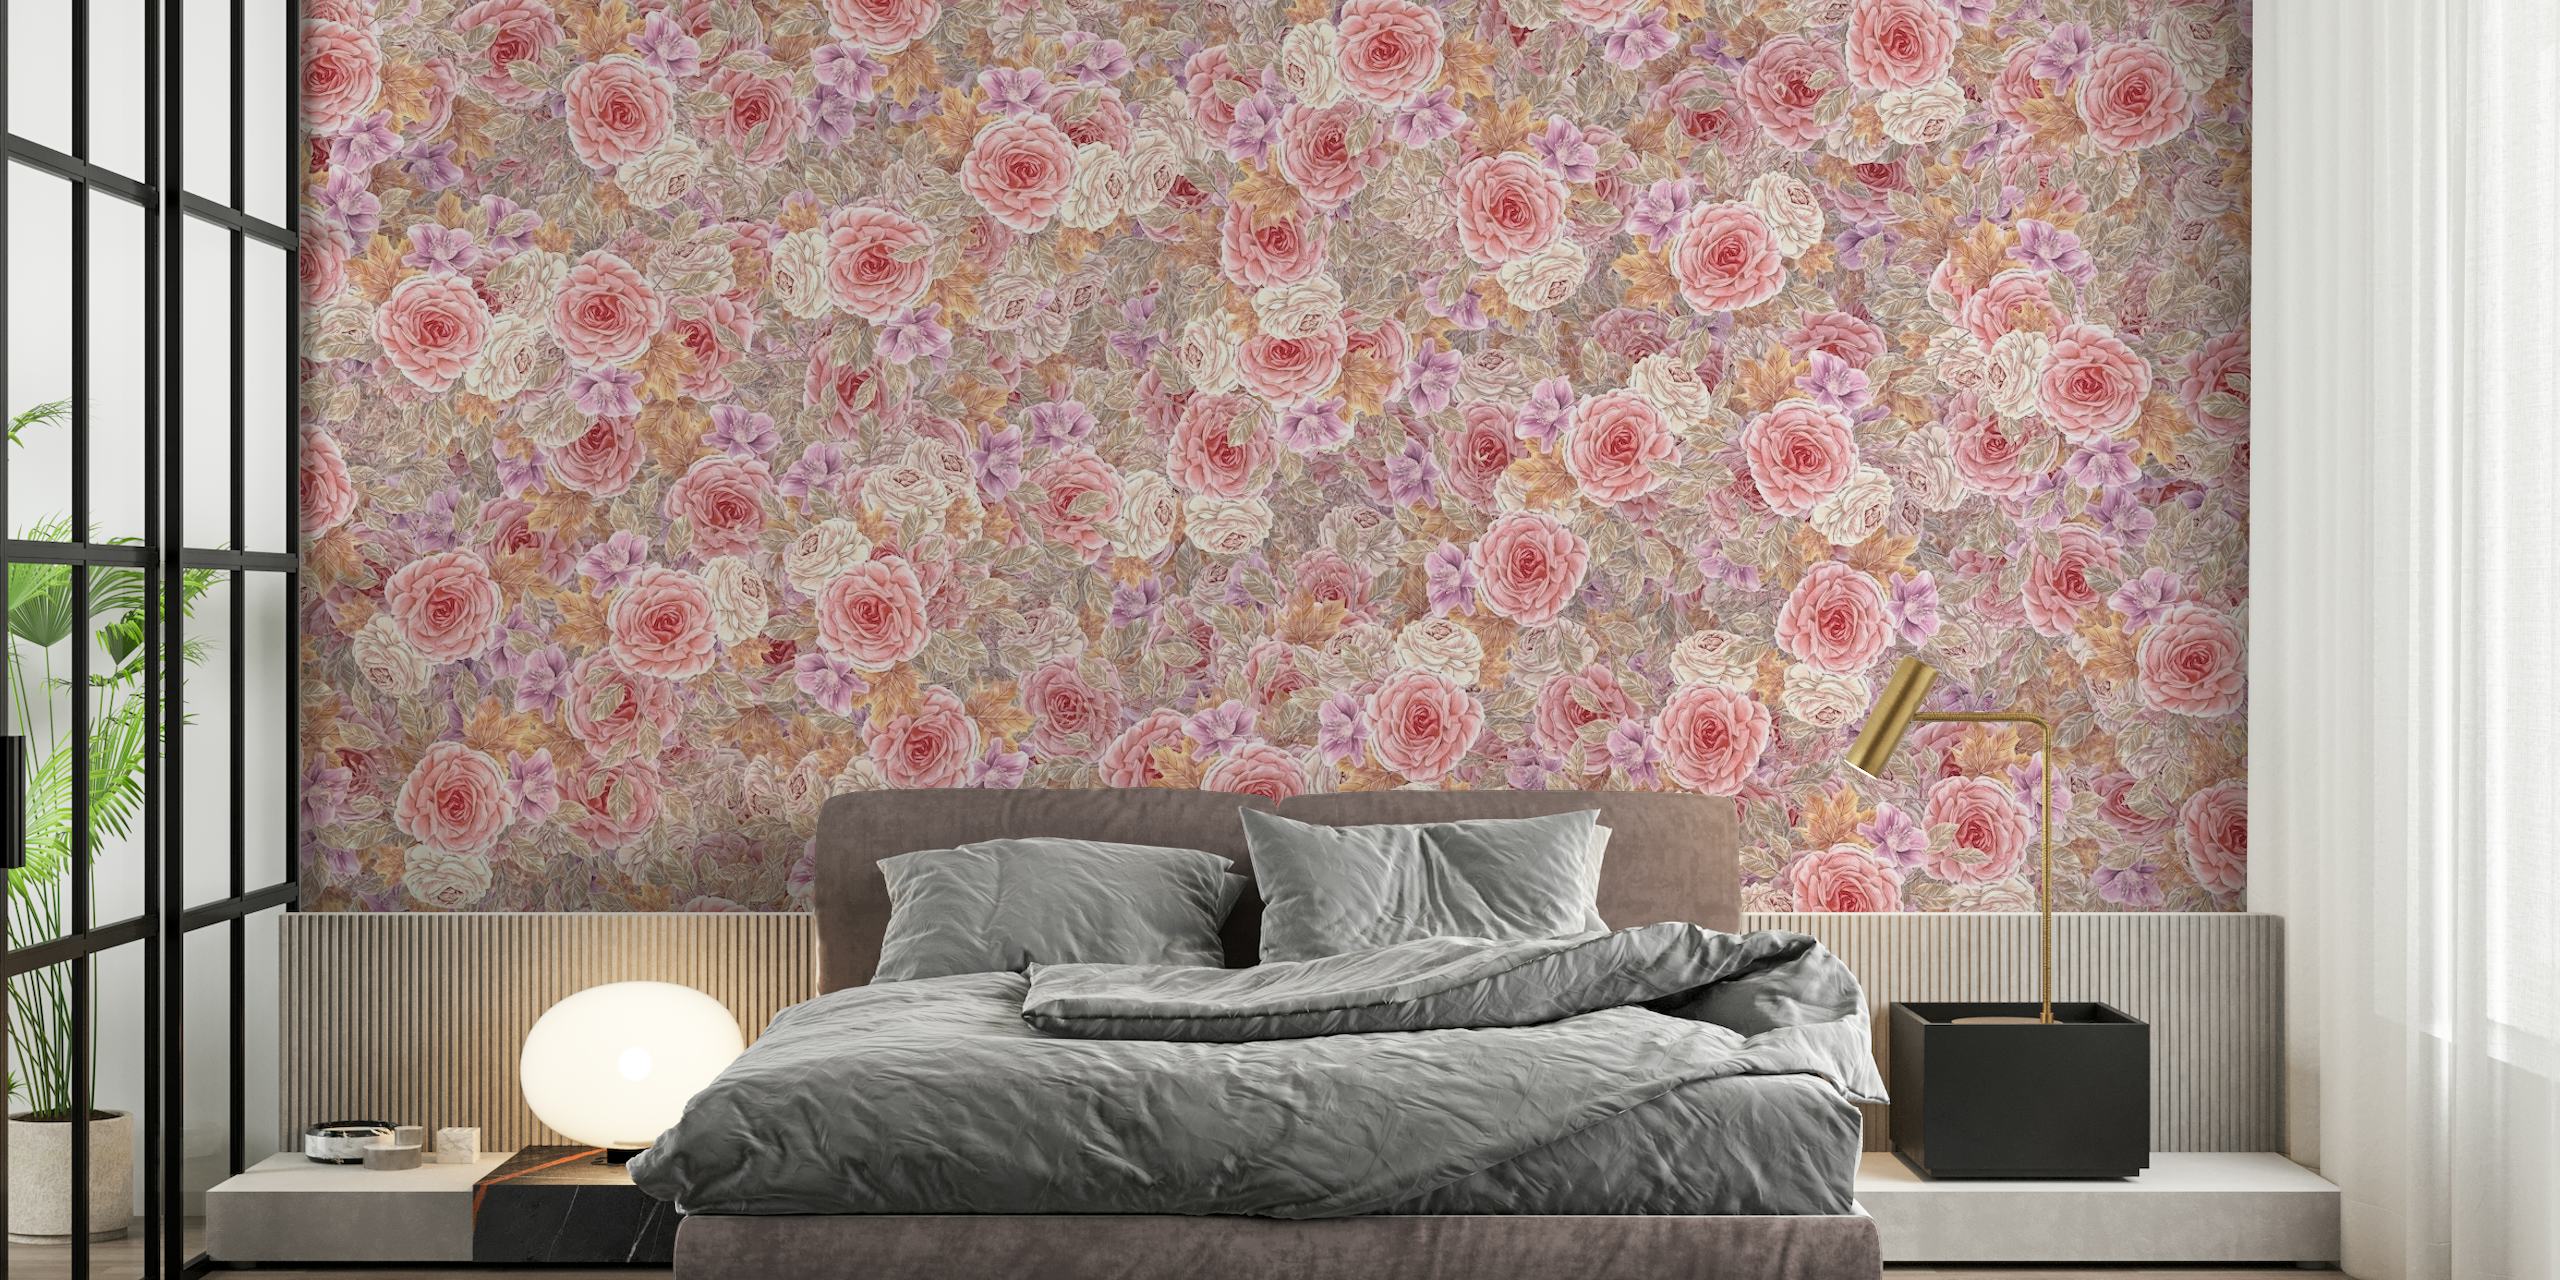 Akvarell terosor i rosa, orange, lila och taupe på en väggmålning